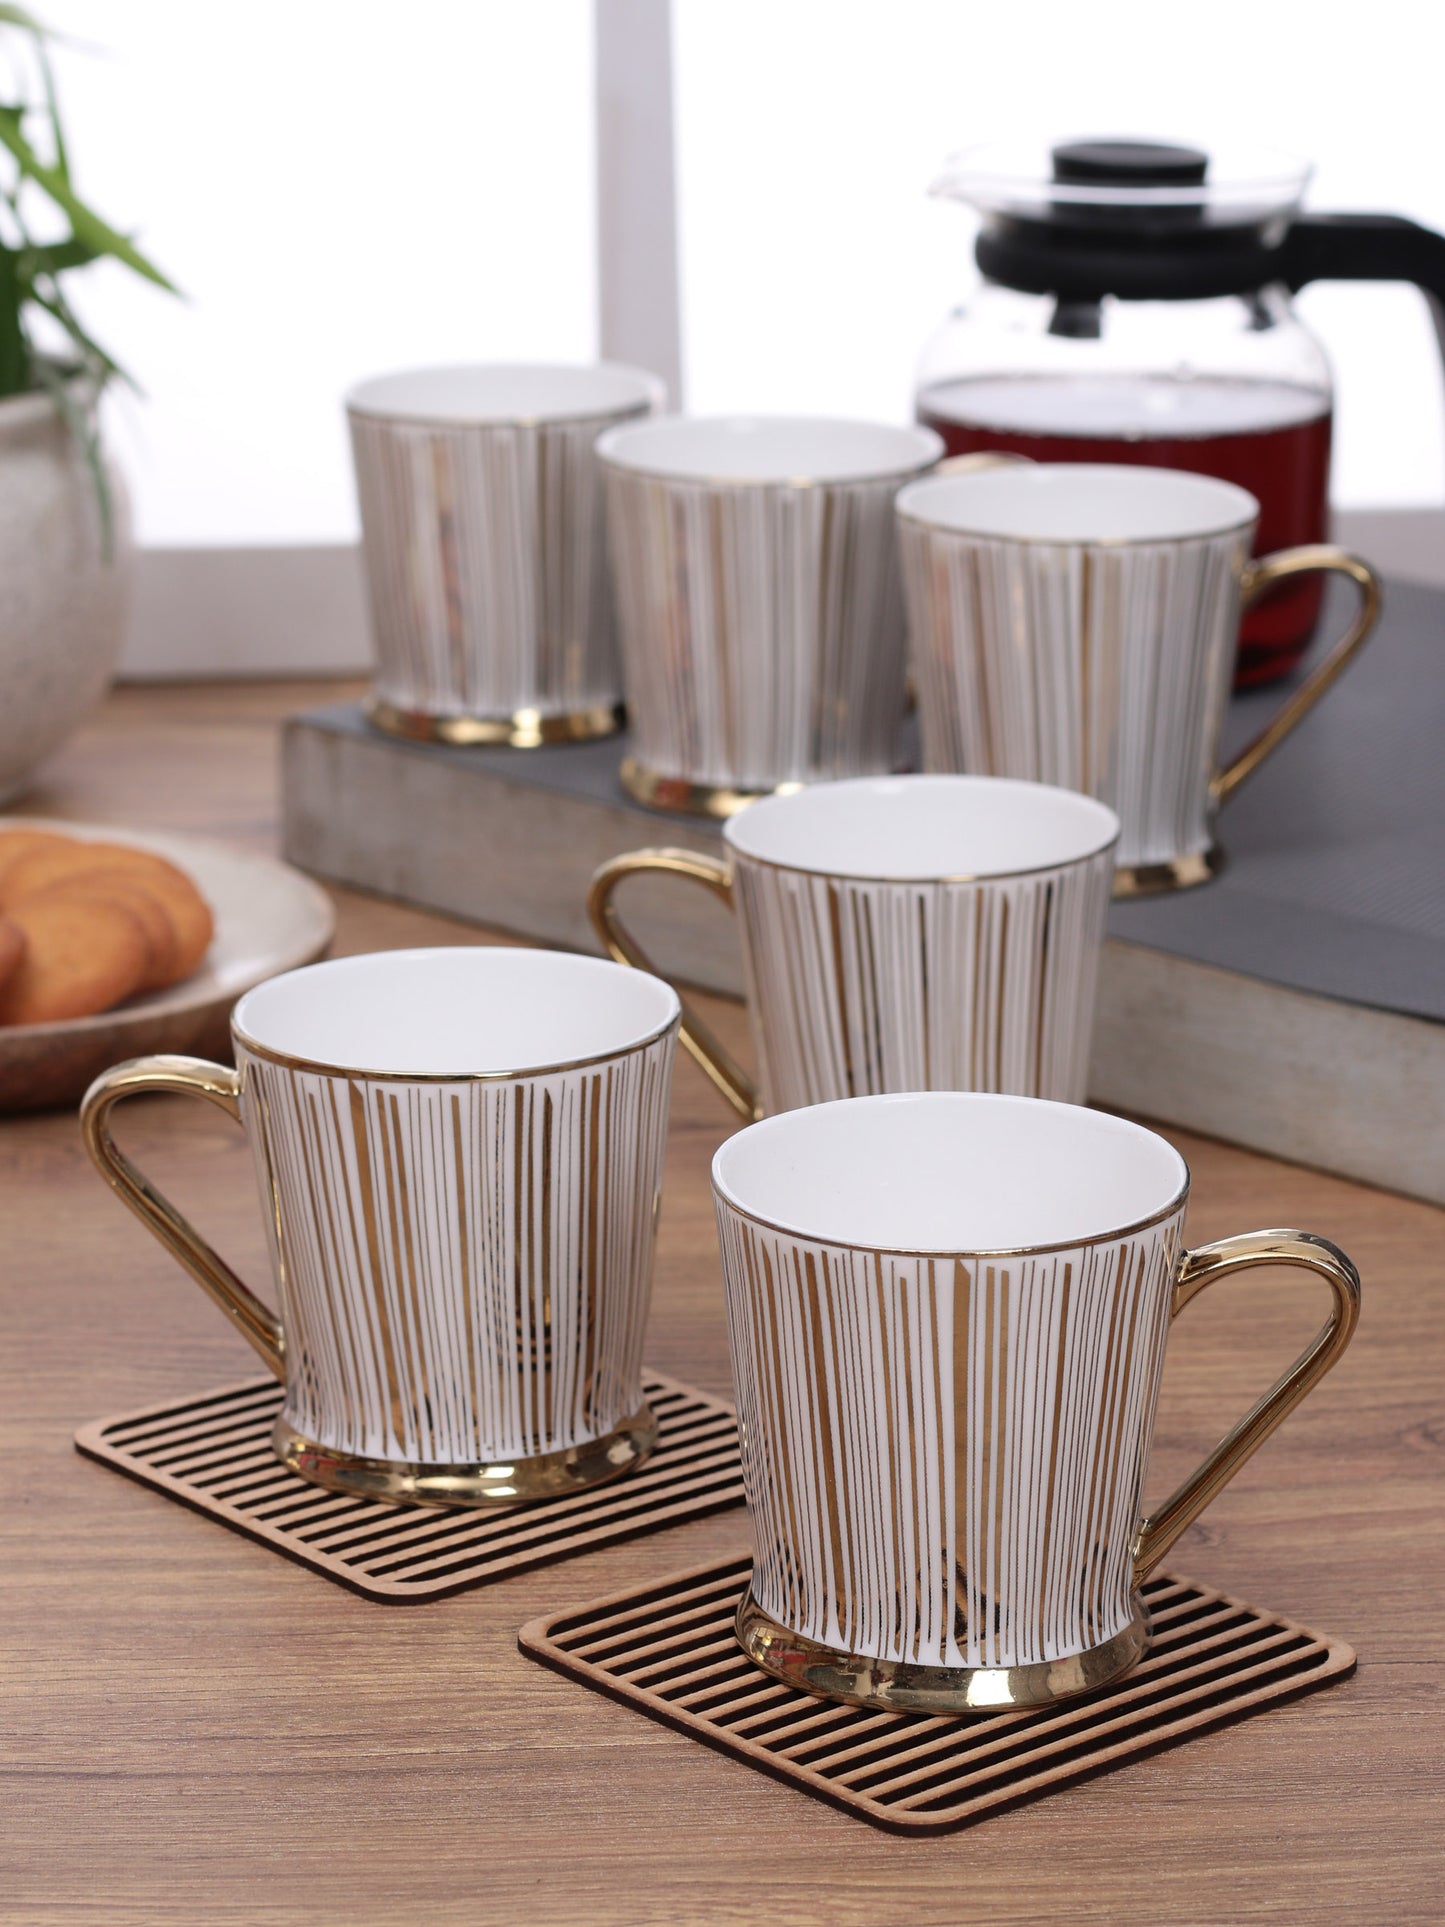 Peter Ebony Coffee & Tea Mugs, 150ml, Set of 6 (E610) - Clay Craft India